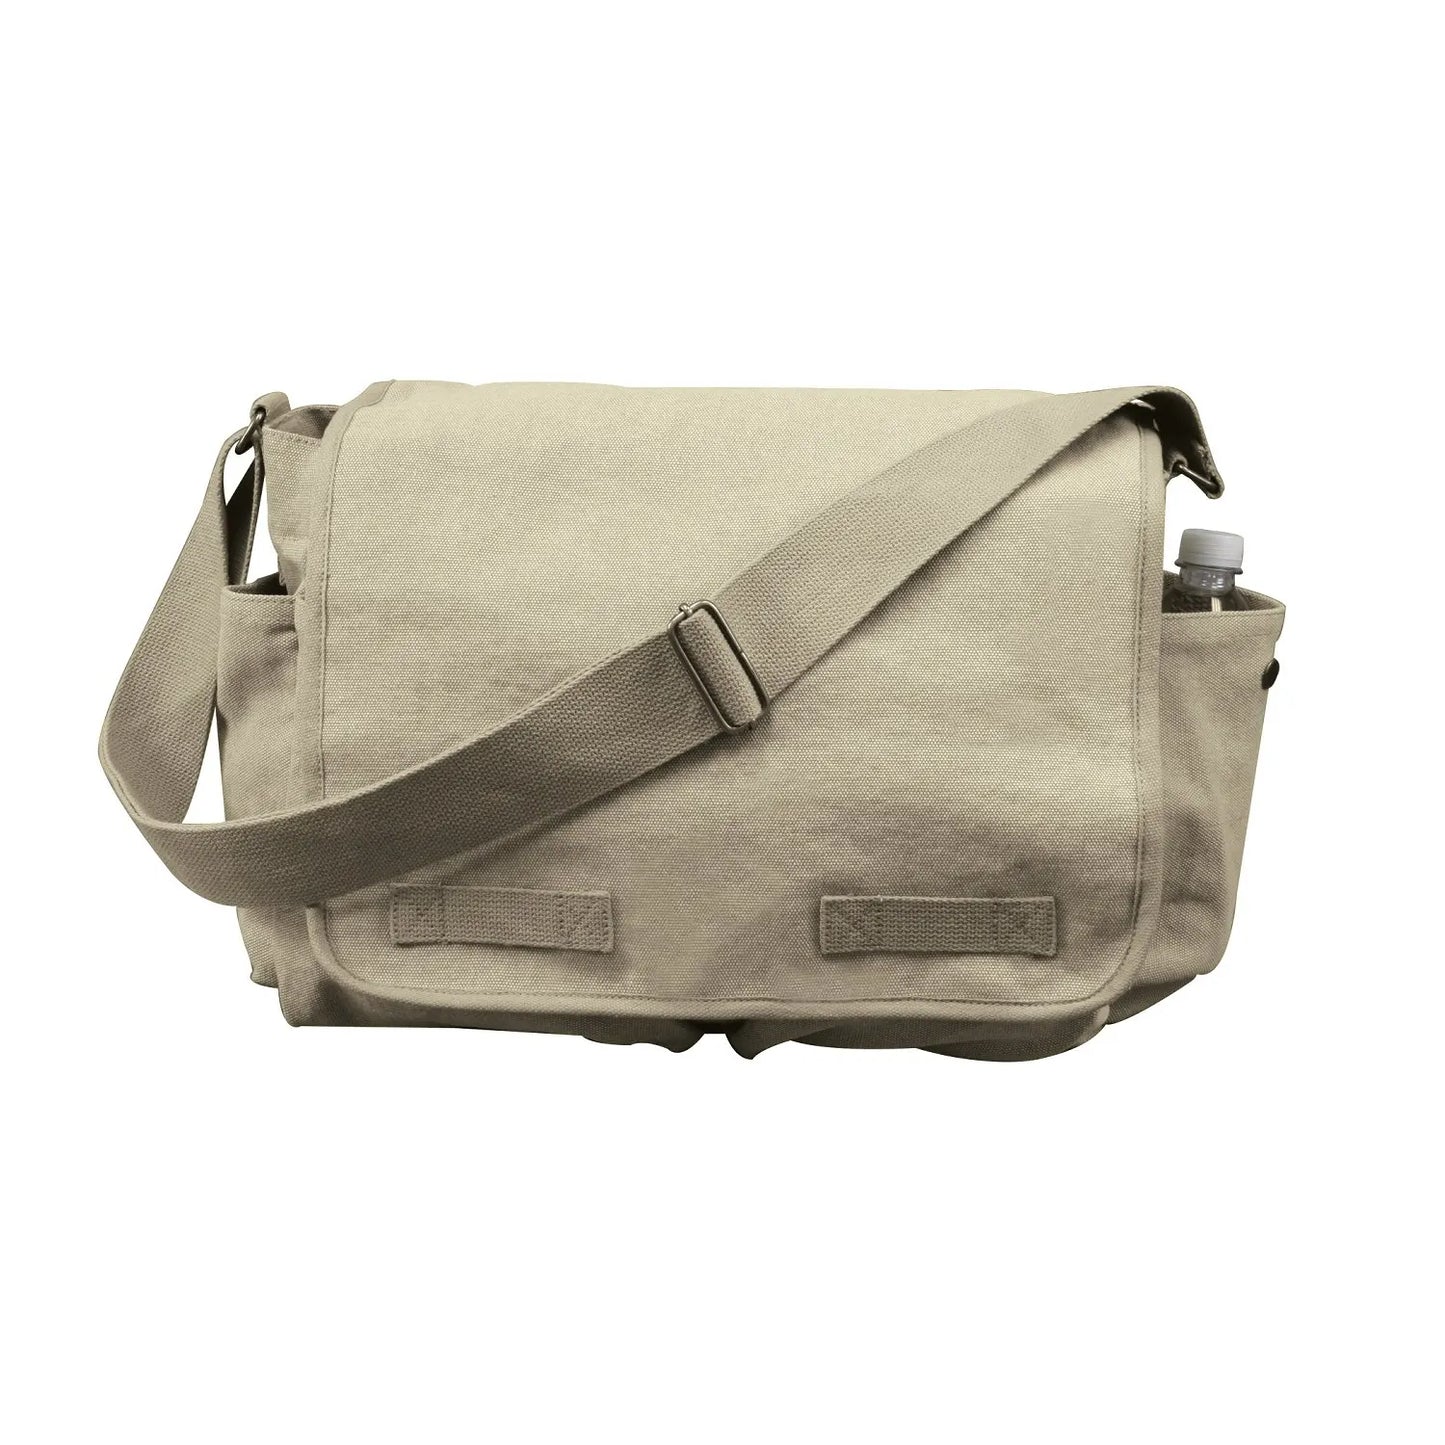 Vintage Washed Canvas Messenger Bag, Adjustable Shoulder Strap, Khaki Brown